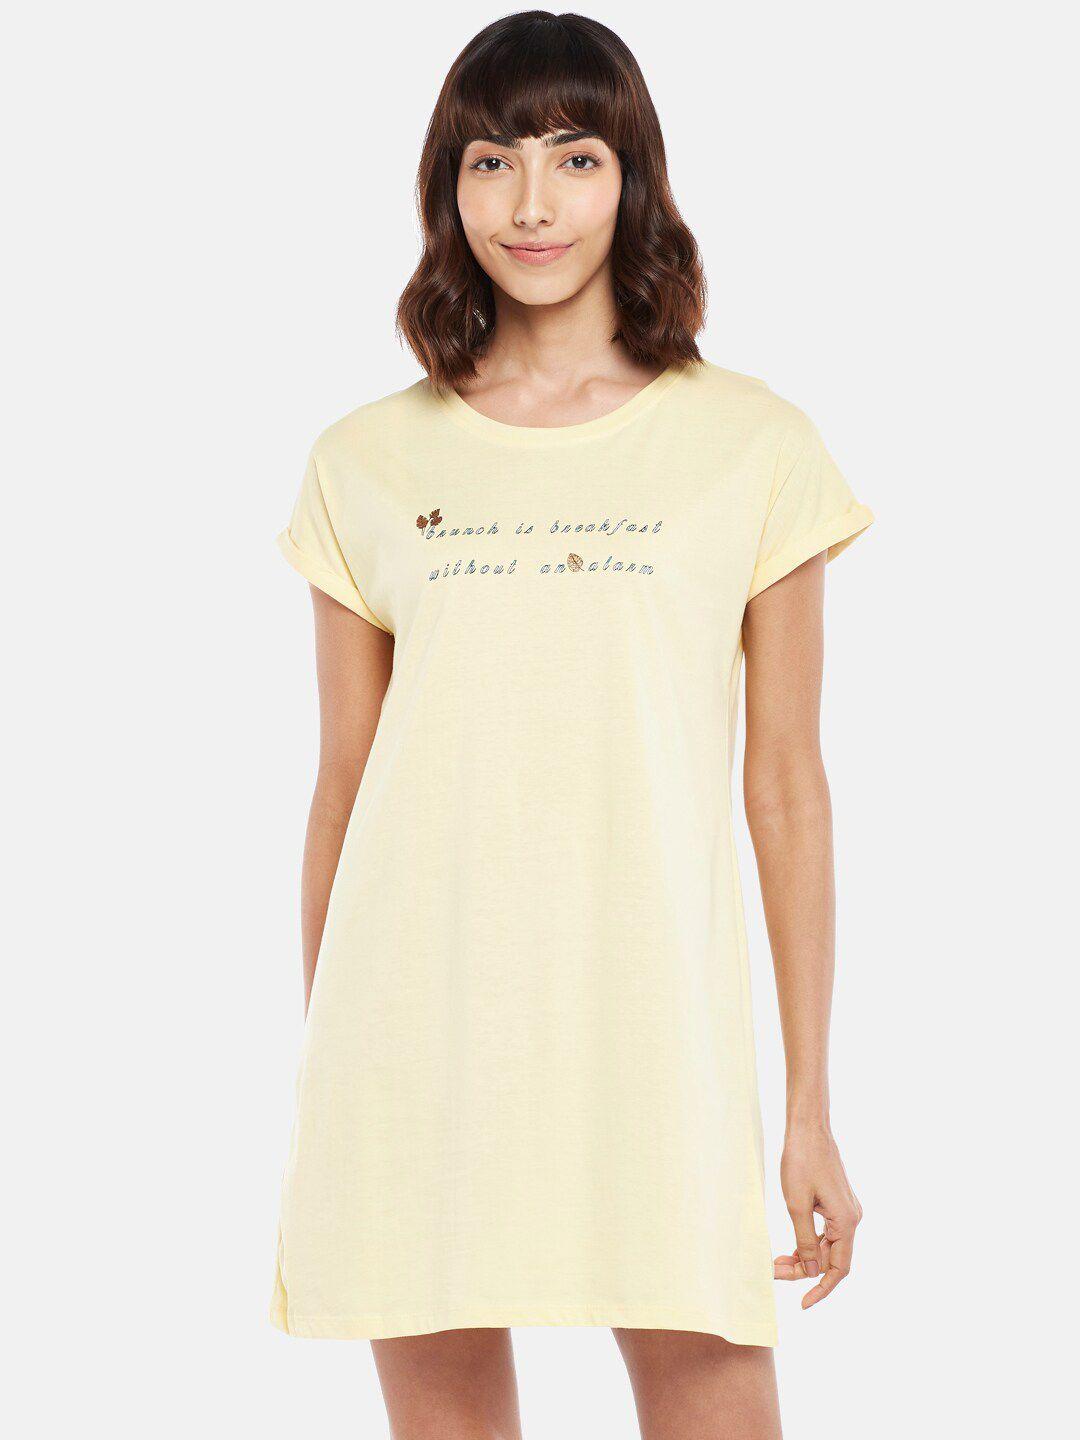 dreamz by pantaloons yellow t-shirt nightdress